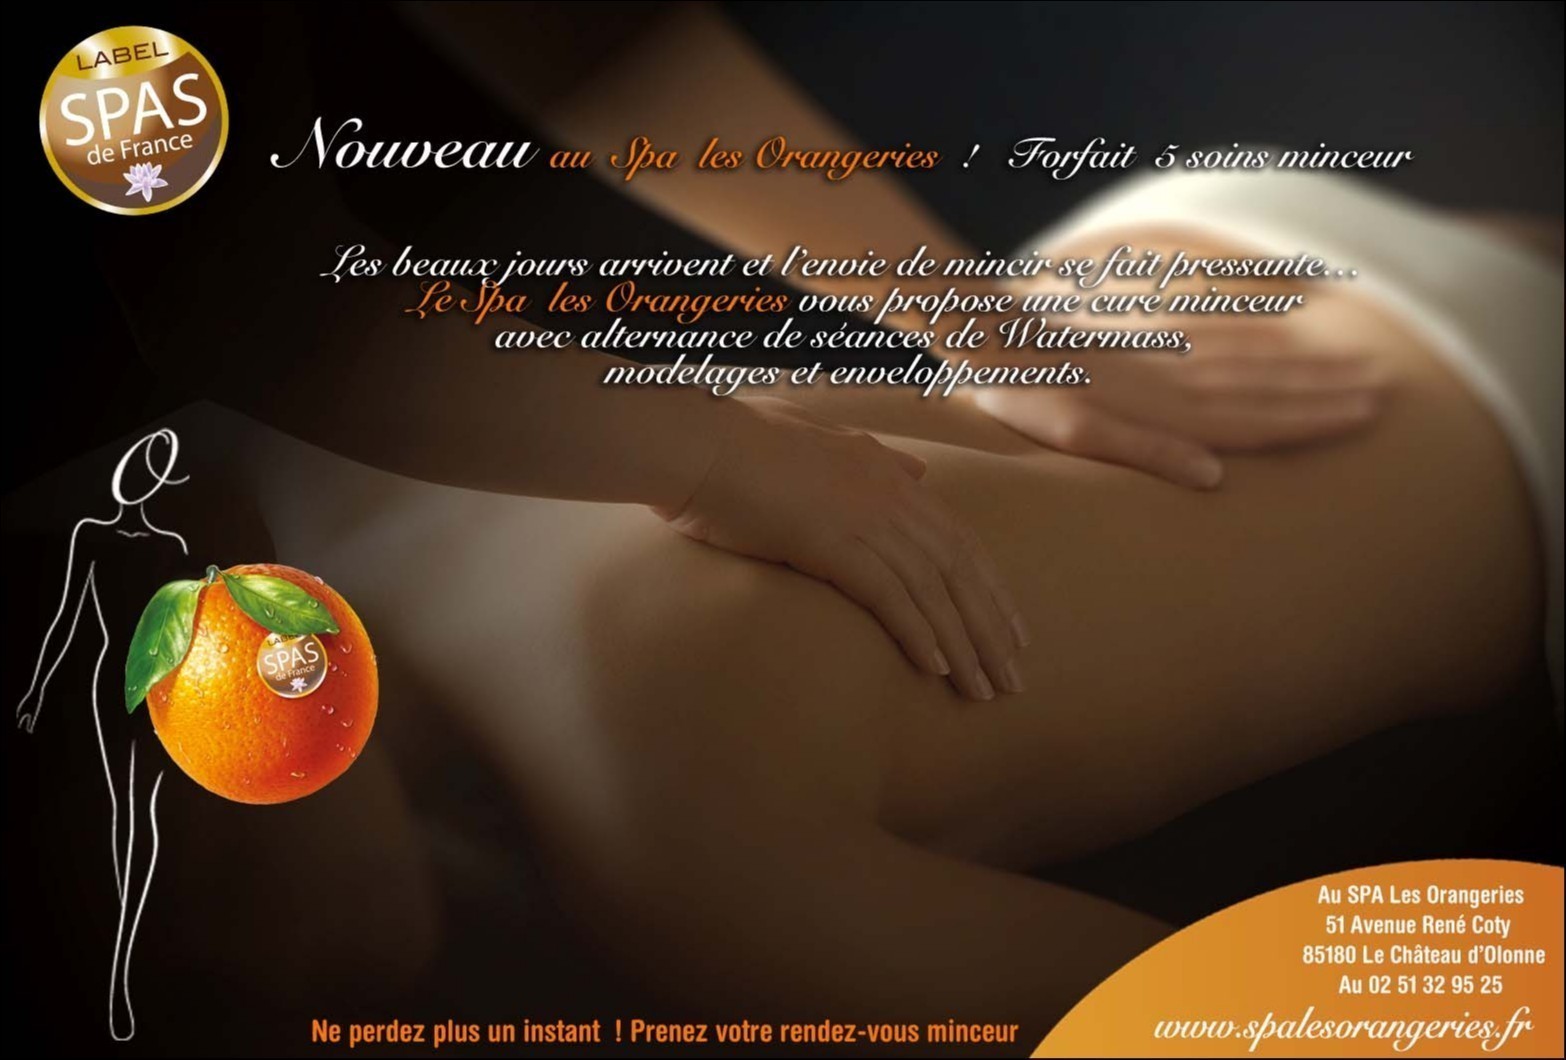 SPA LES ORANGERIES - Massage Sensoriel by D. GRAND